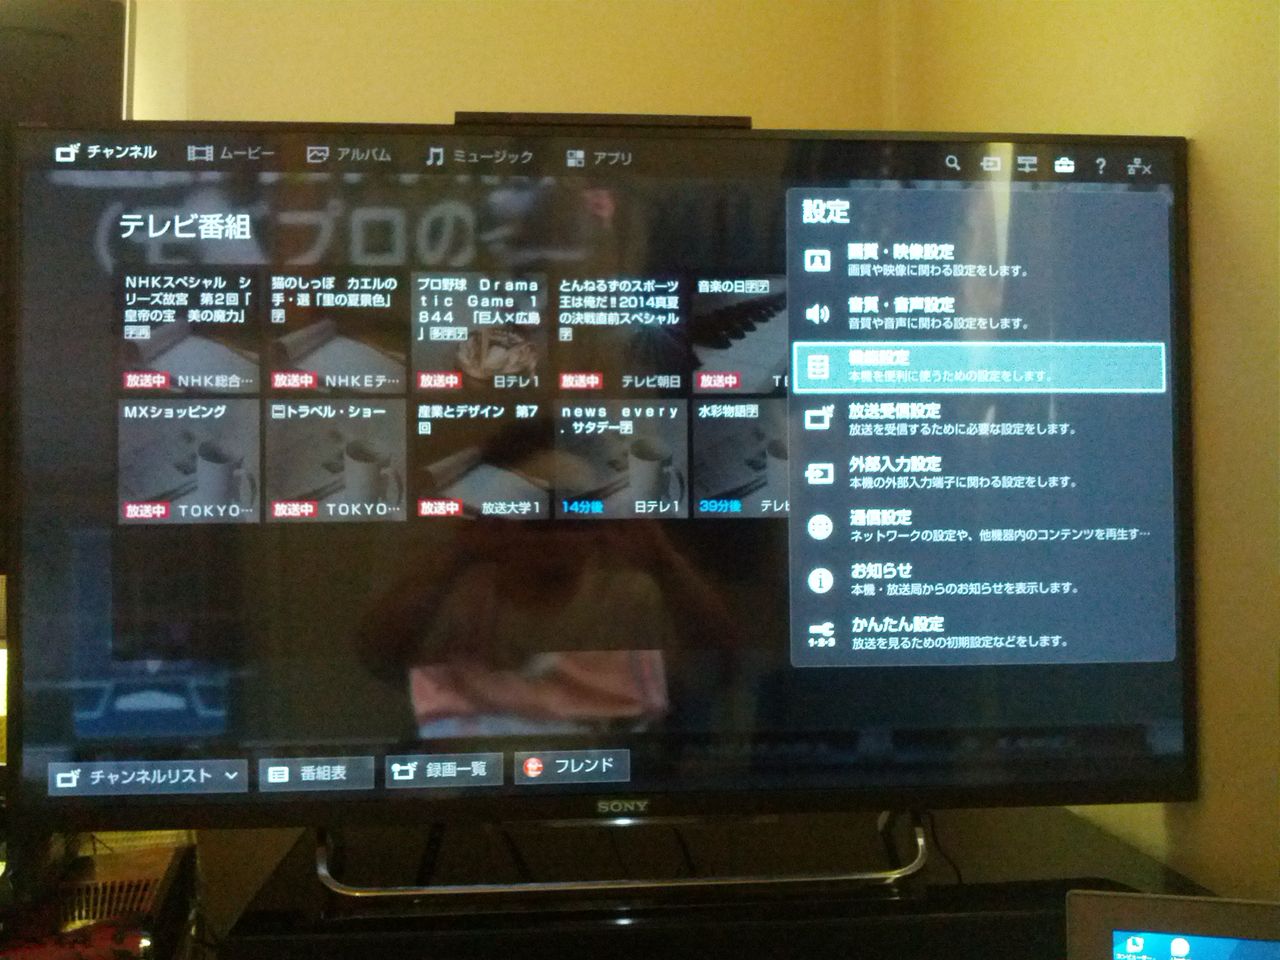 ソニー 3D液晶テレビ KDL-42W900B 42インチ ネット動画対応 - テレビ